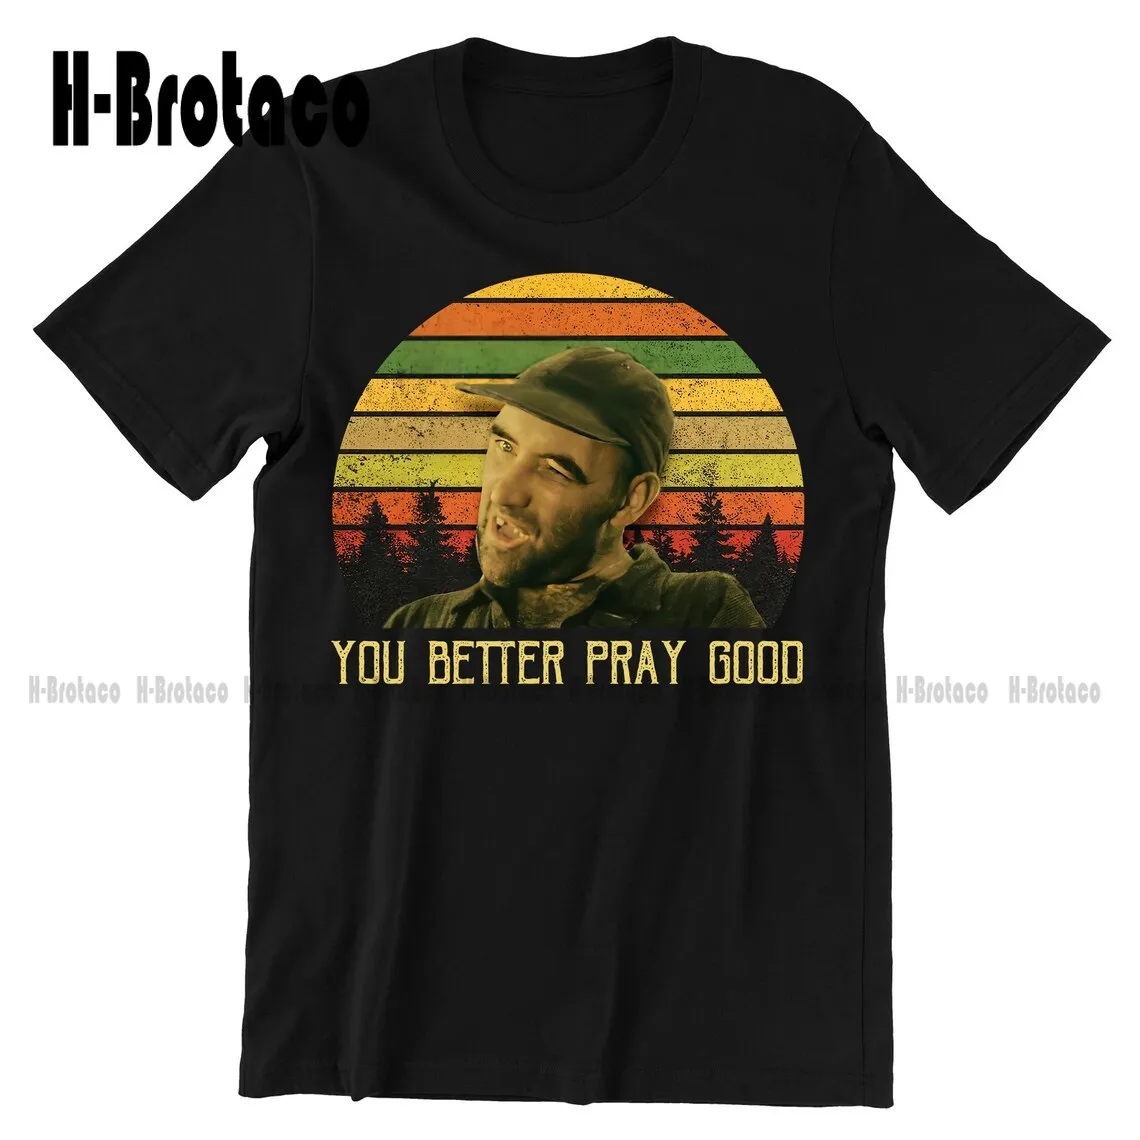 

Винтажная футболка с надписью You Better Pray Good, хлопковая футболка унисекс с цитатами фильмов, простые винтажные повседневные футболки для улицы